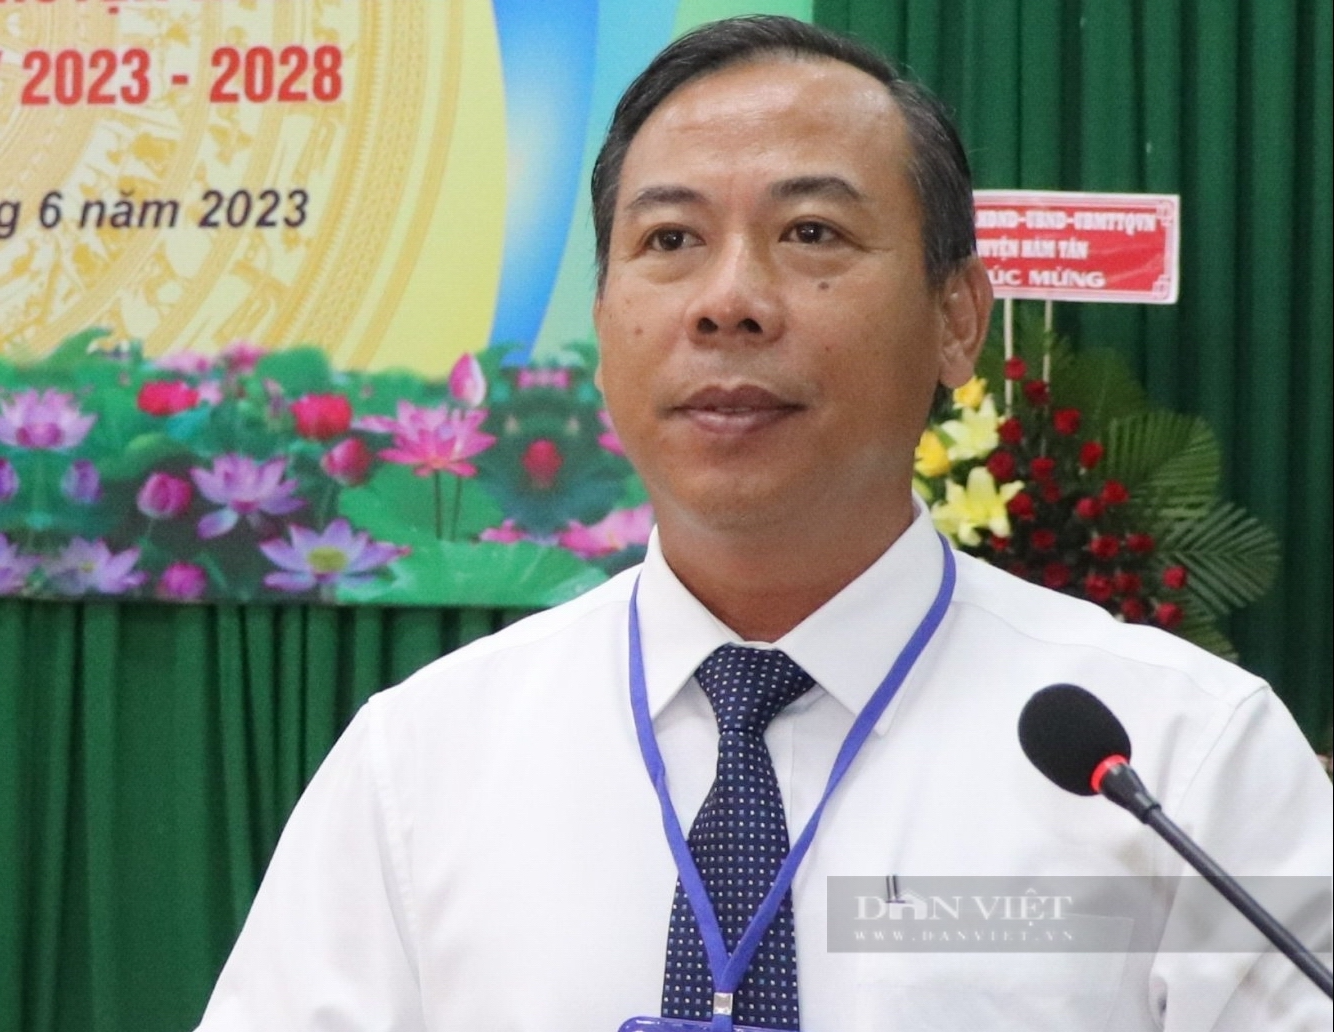 Bình Thuận: Ông Phạm Văn Mười tái đắc cử chức Chủ tịch và Hội Nông dân thị xã La Gi nhiệm kỳ 2023-2028 - Ảnh 5.